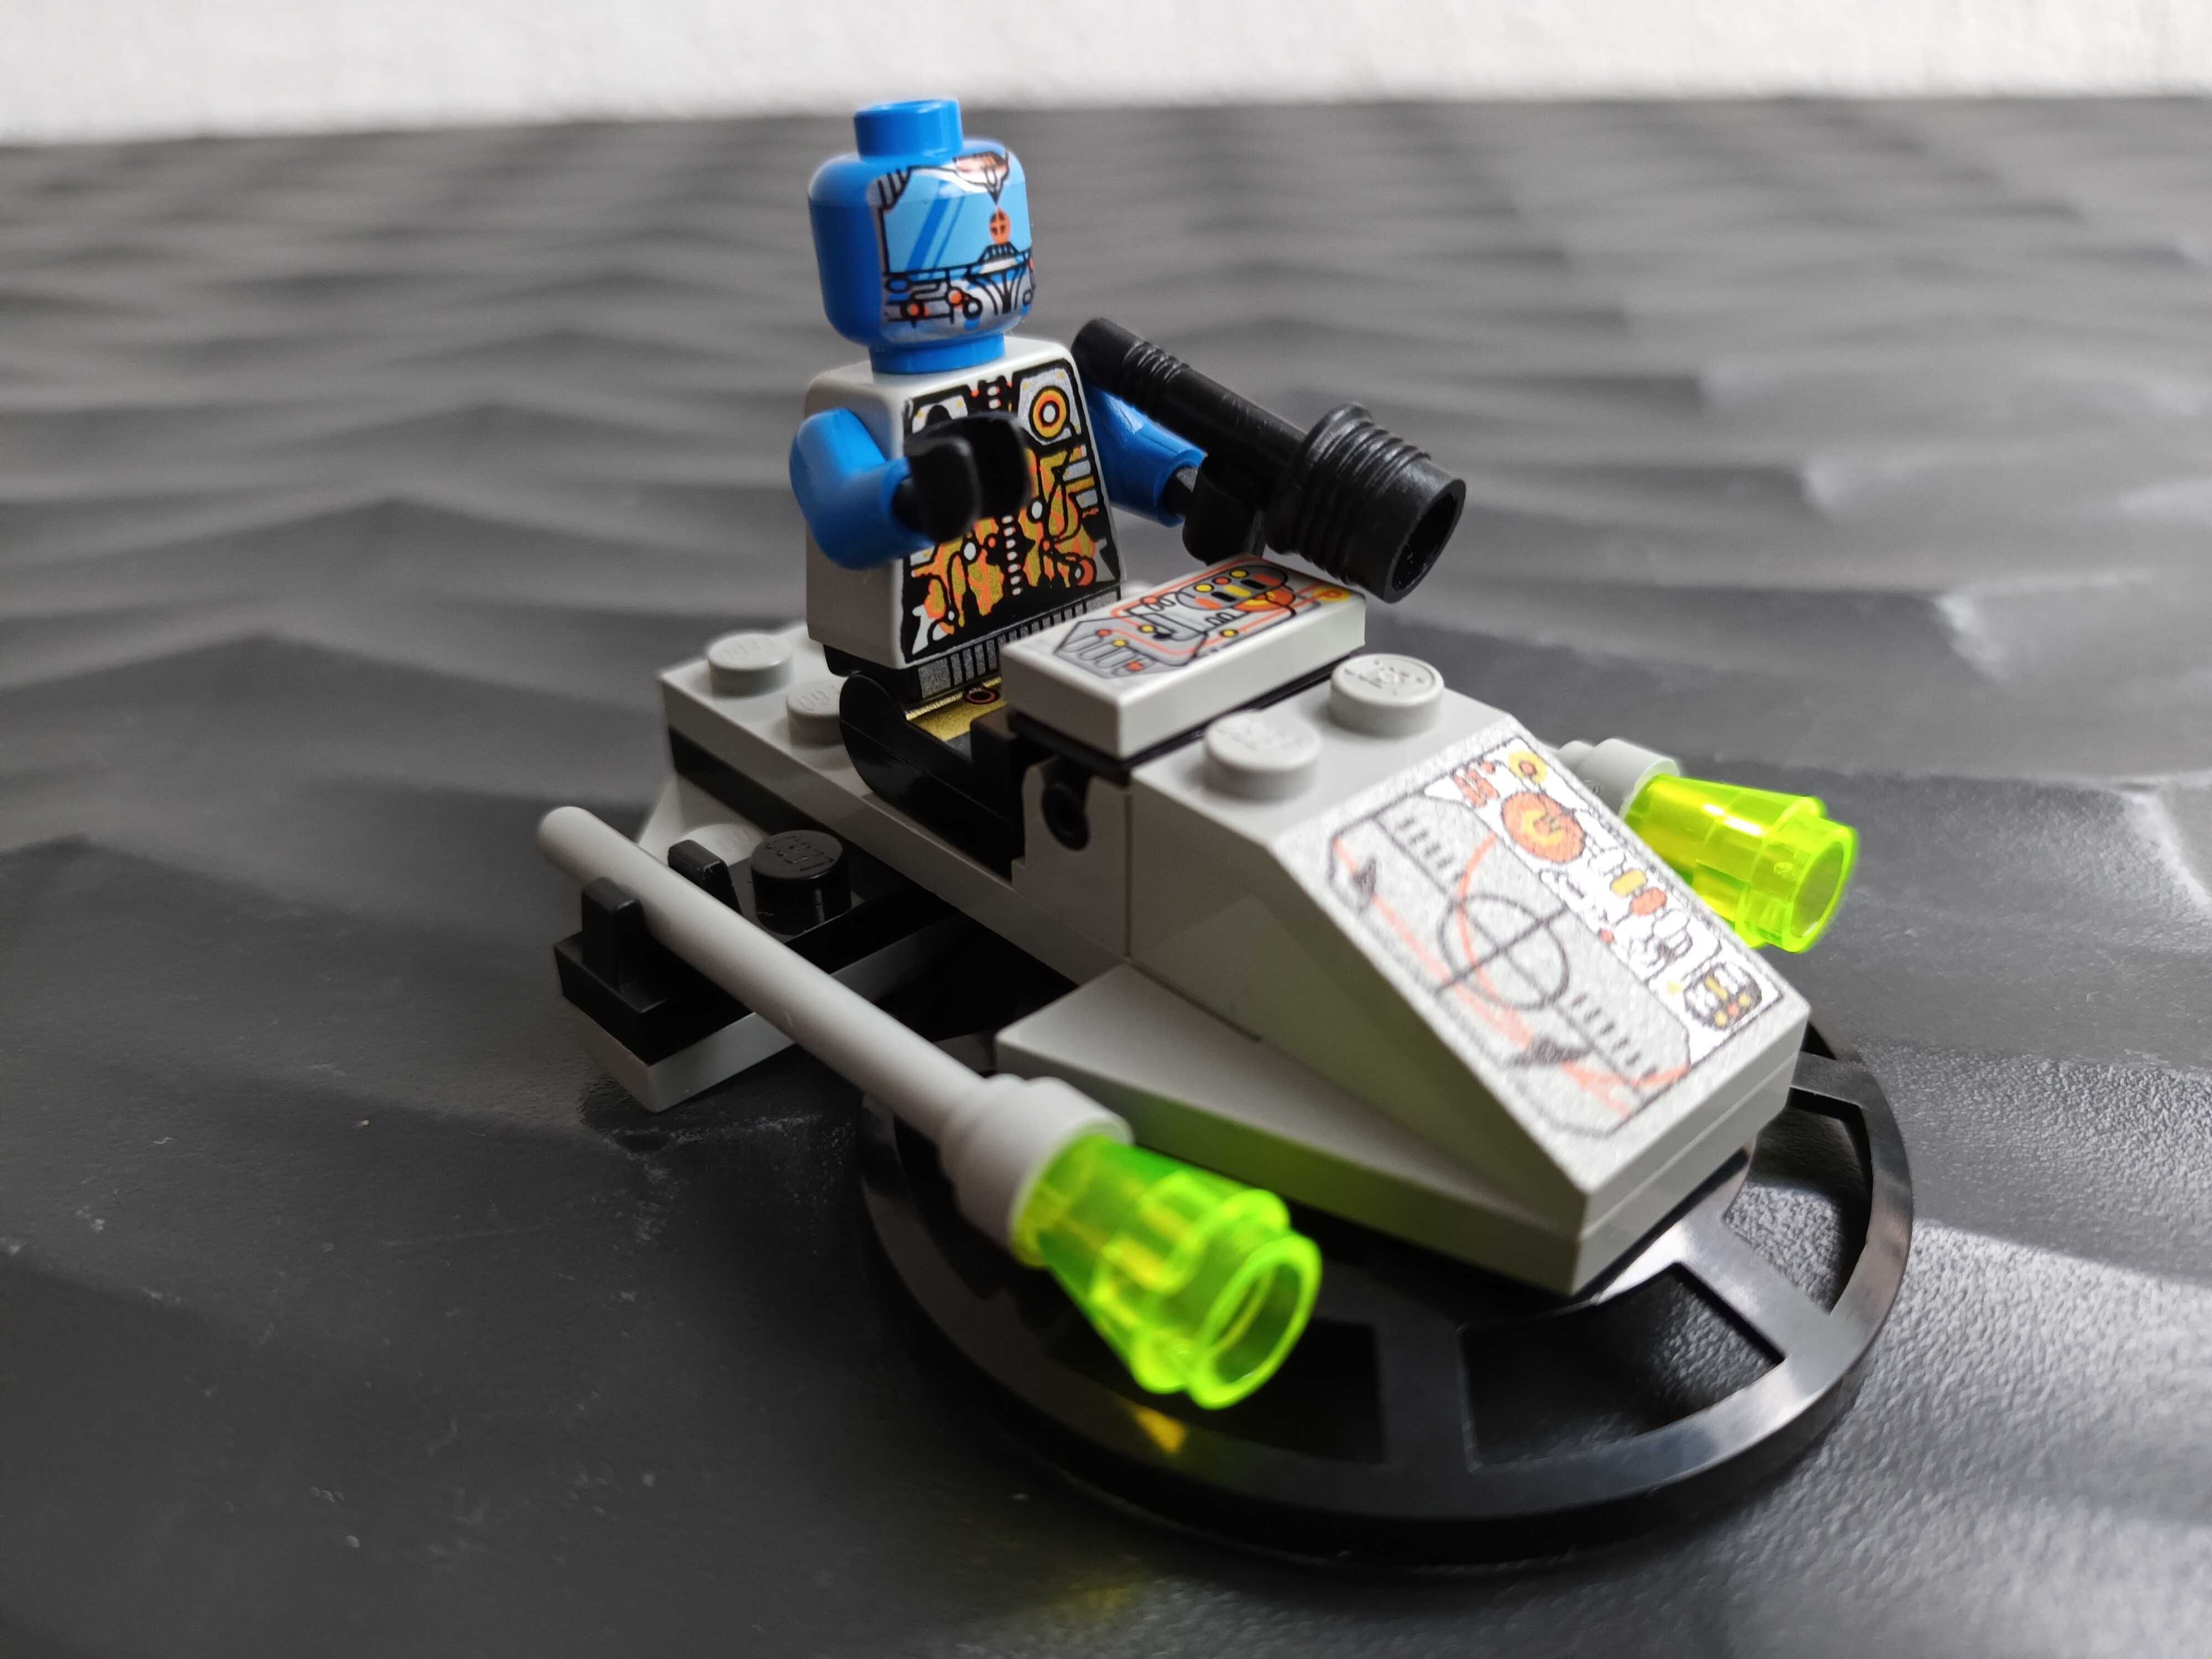 Klocki Lego Space - 6816 Space hover